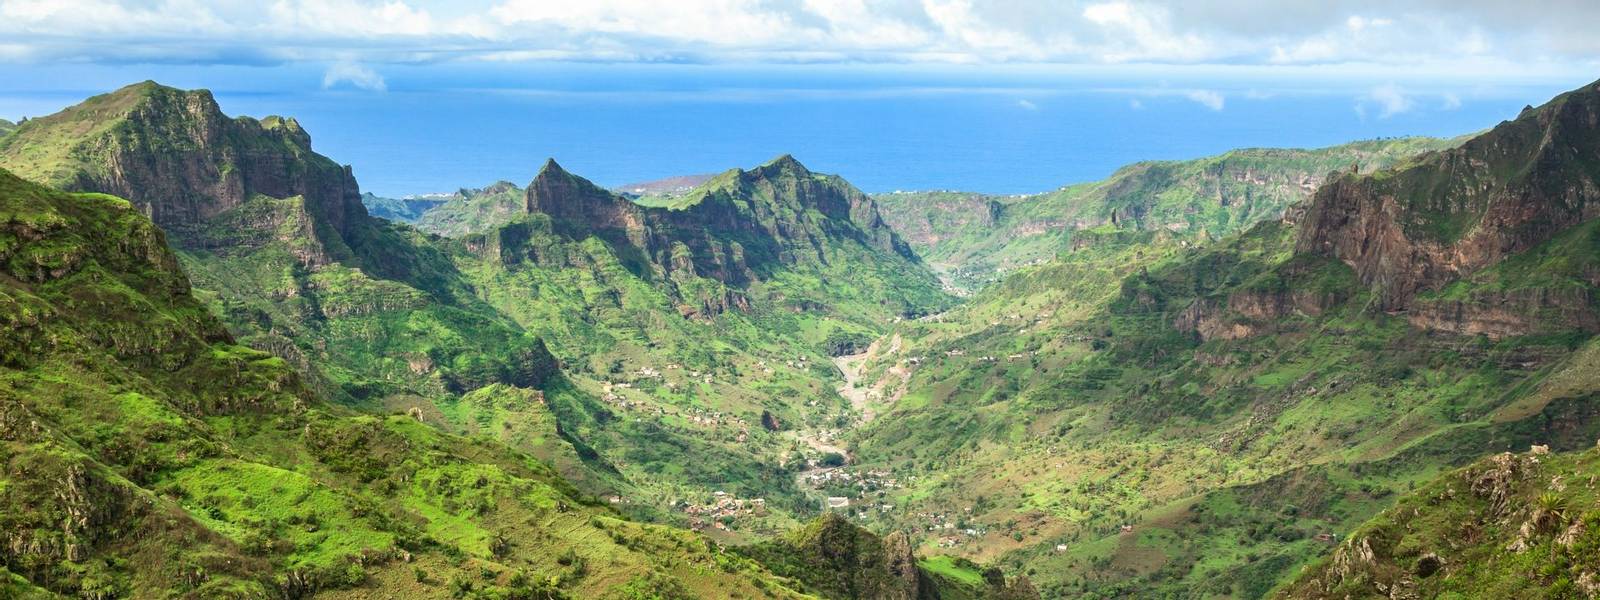 Serra Malagueta mountains in Santiago Island Cape Verde - Cabo Verde